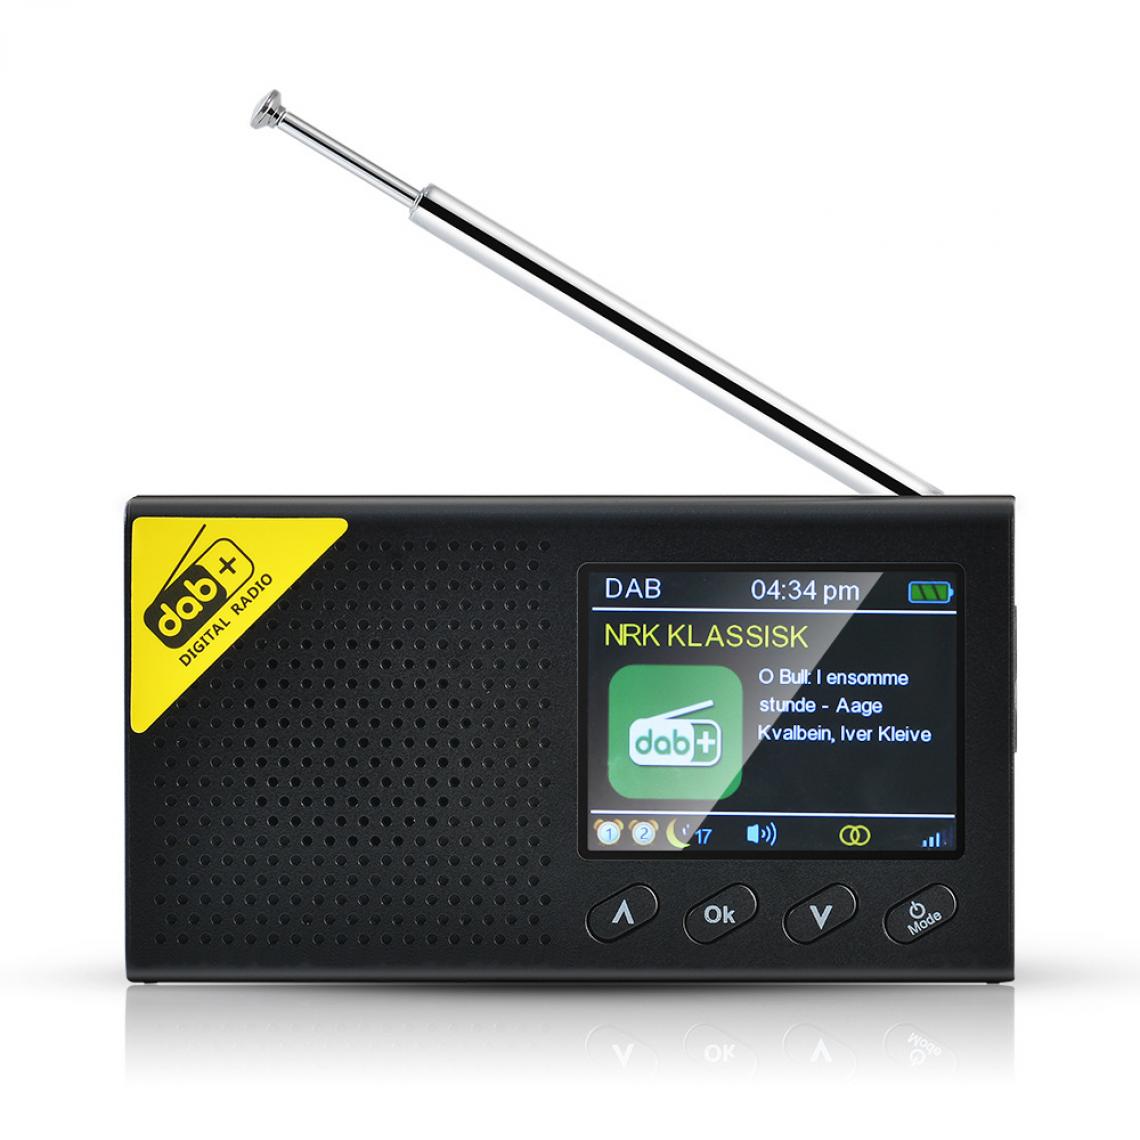 Universal - Radio portable 5.0 radio numérique stéréo DAB/DAB + haut-parleur stéréo extérieur domestique 2,4 pouces LCD radio FM rechargeable |(Le noir) - Radio